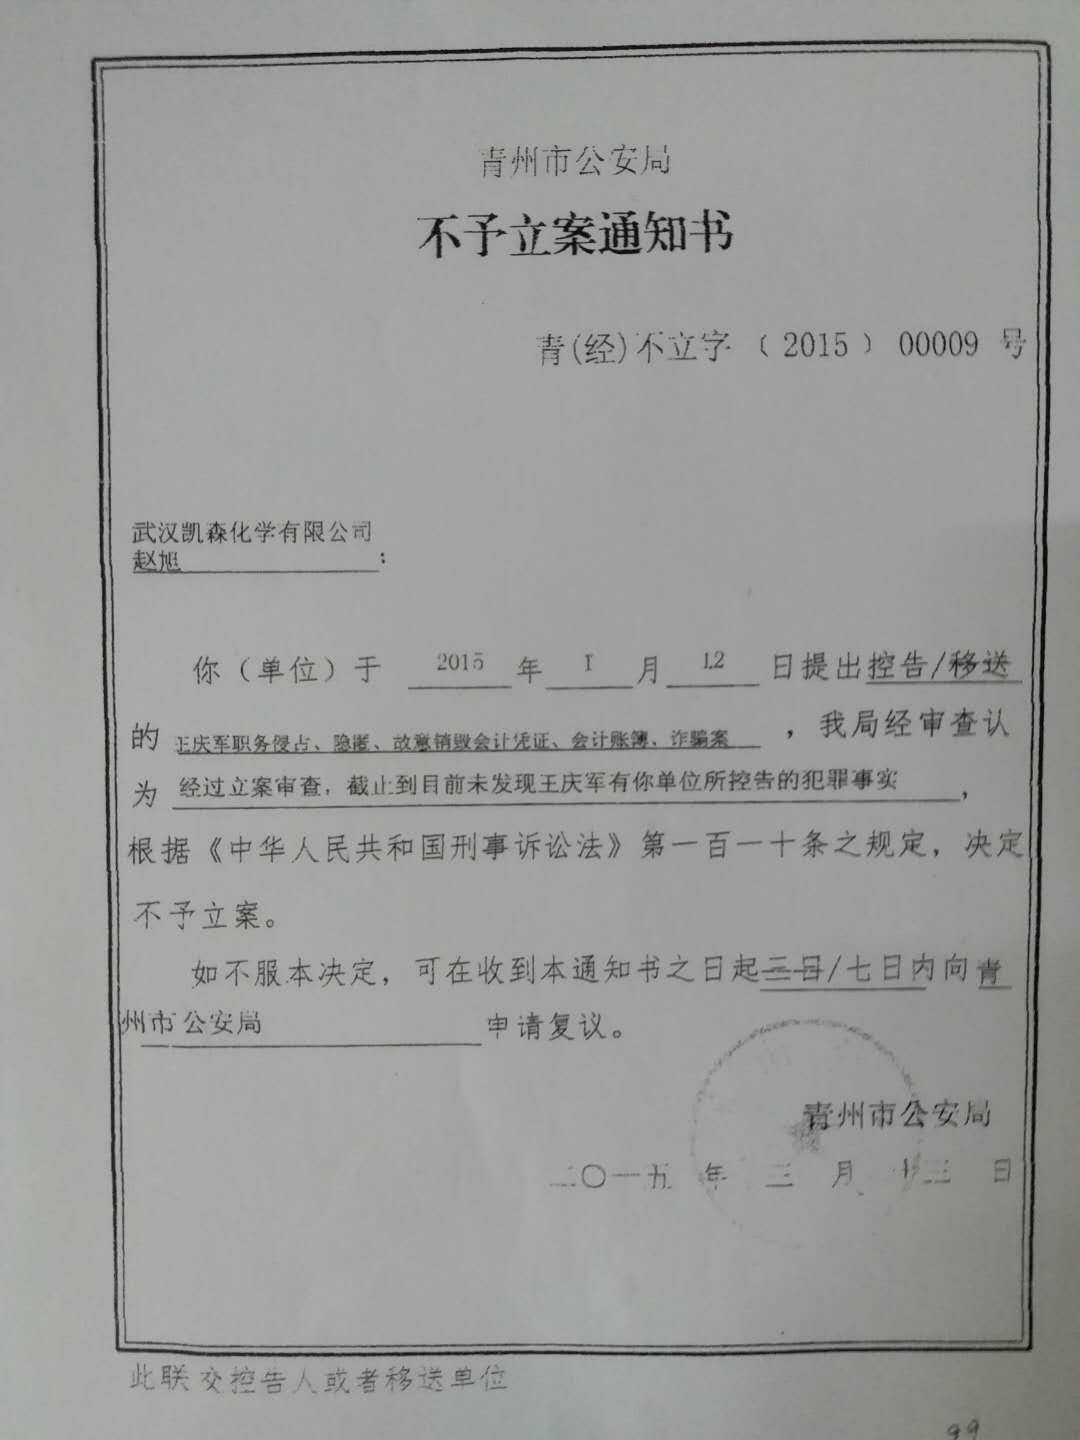 青州市公安局出具的不予立案通知书